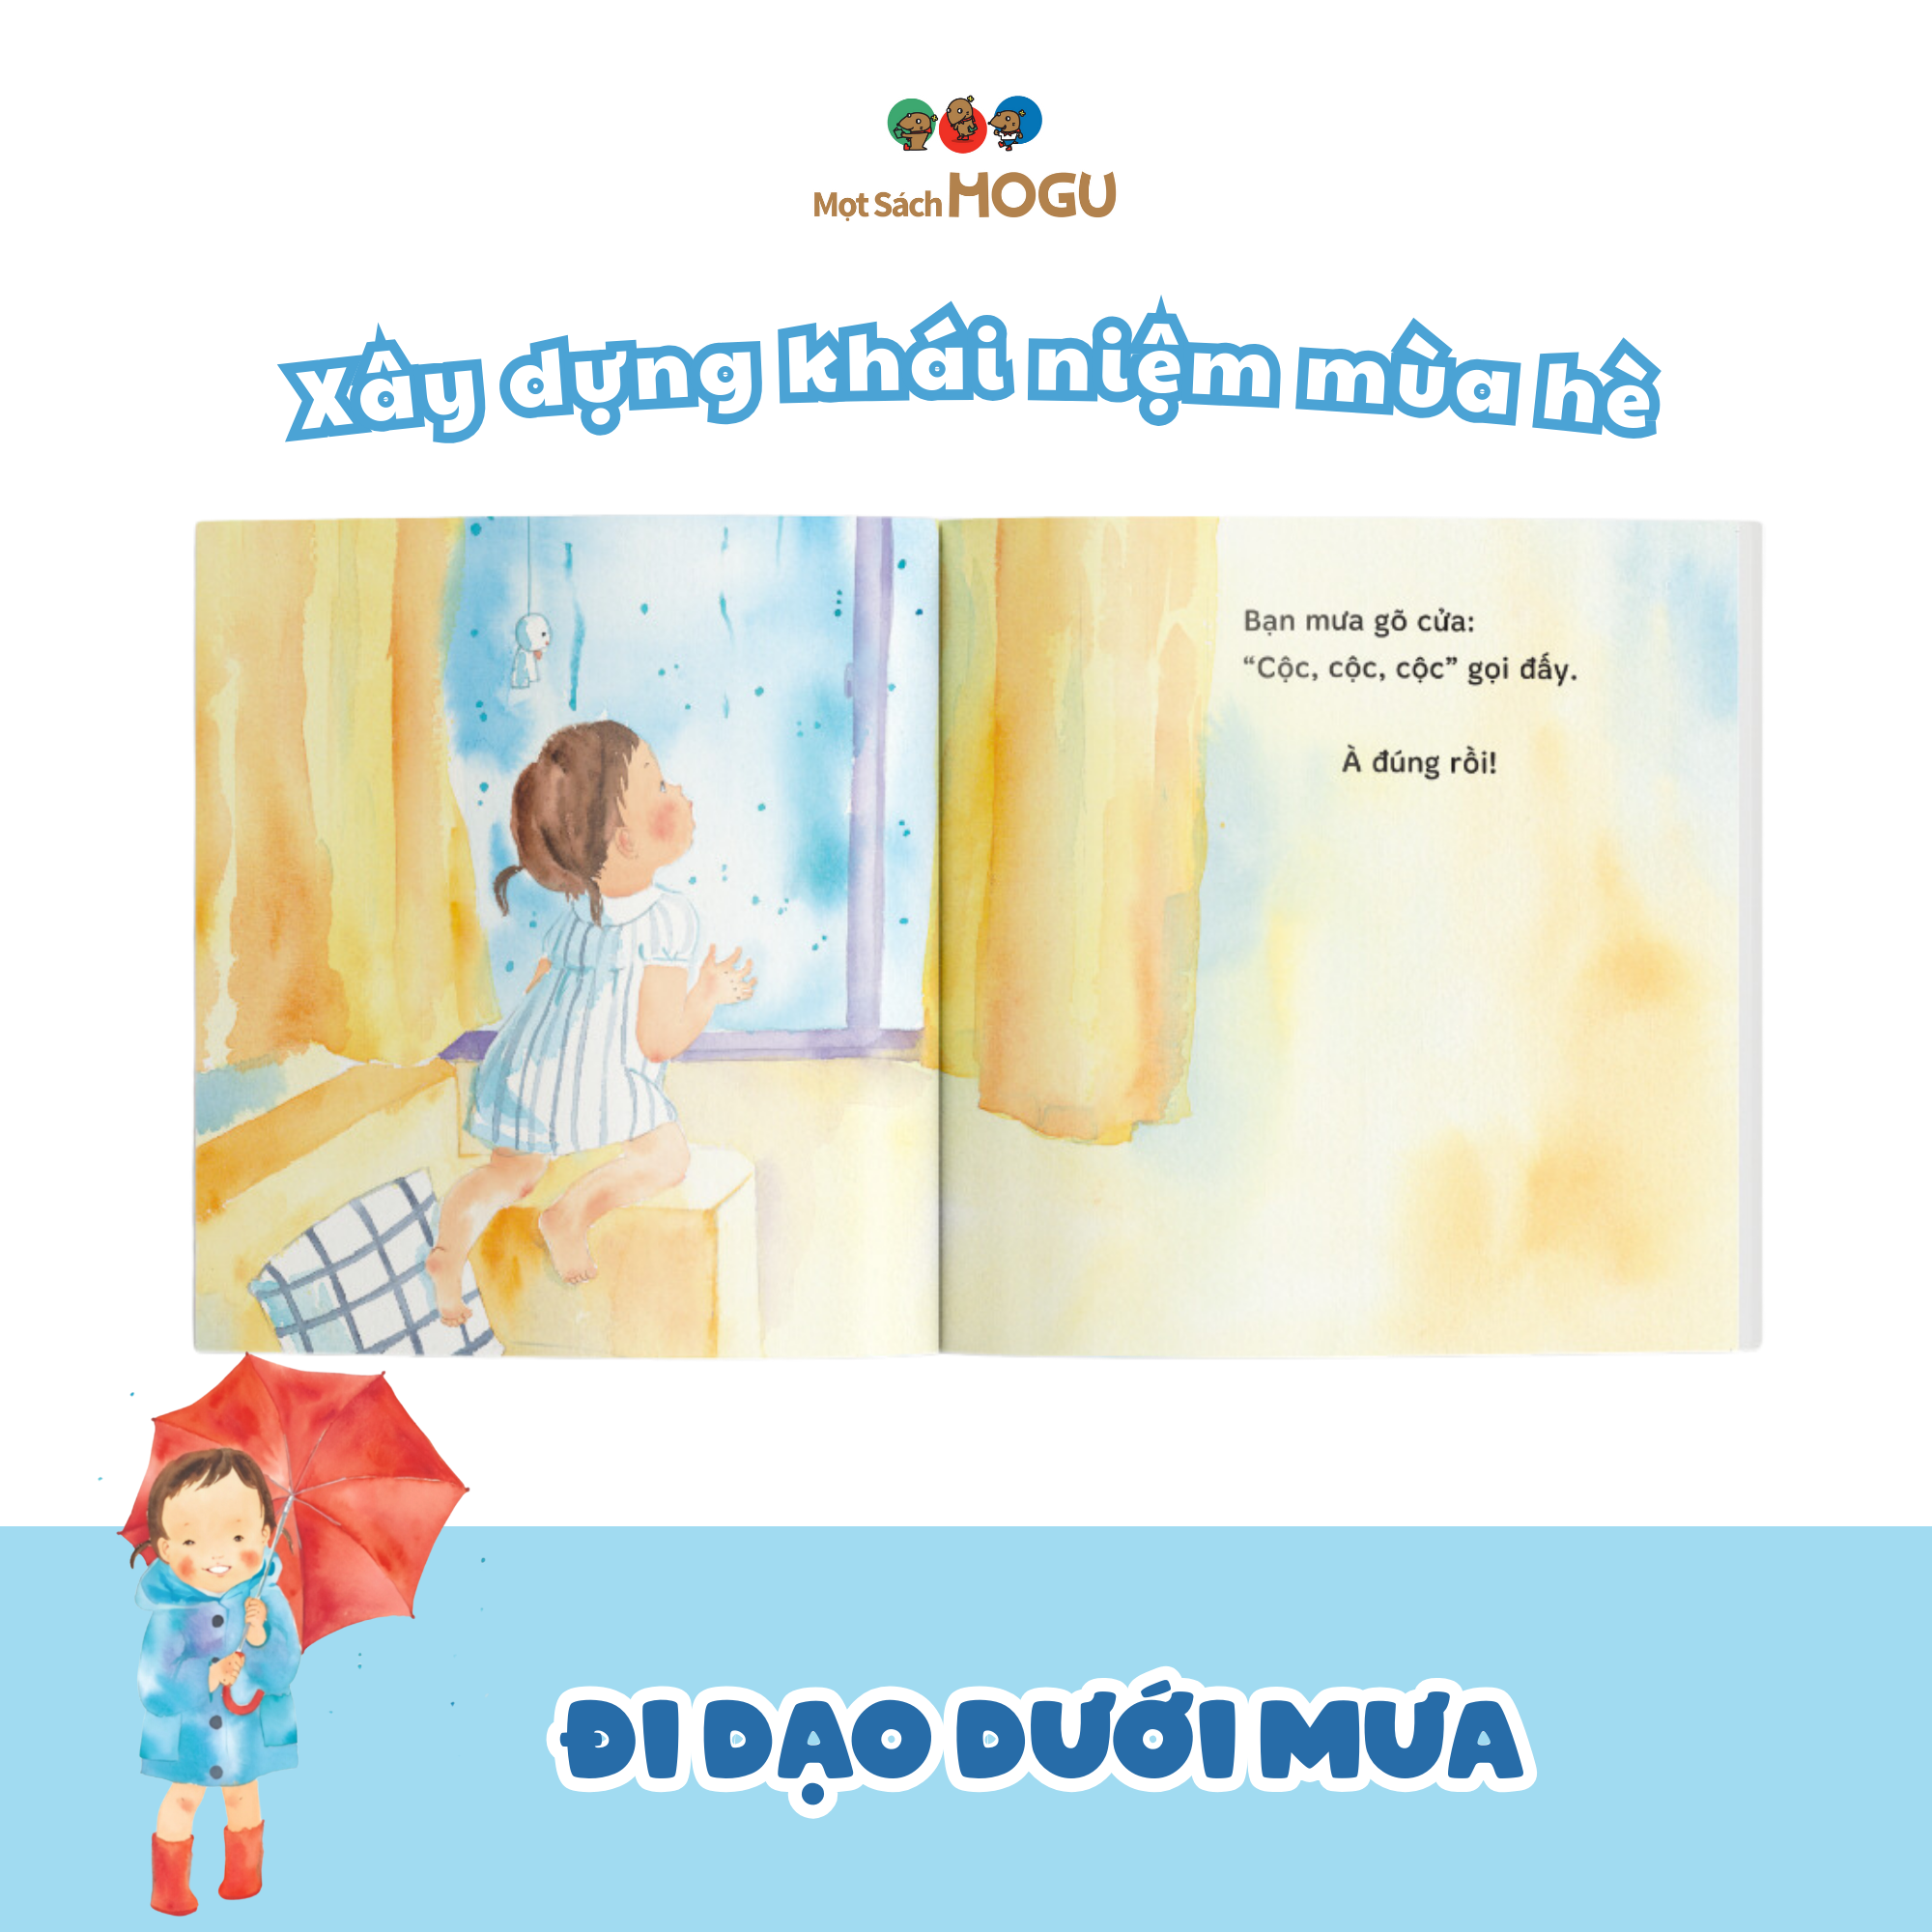 Sách cho bé 1-3 tuổi - Đi dạo dưới mưa (Truyện tranh Ehon Nhật Bản)